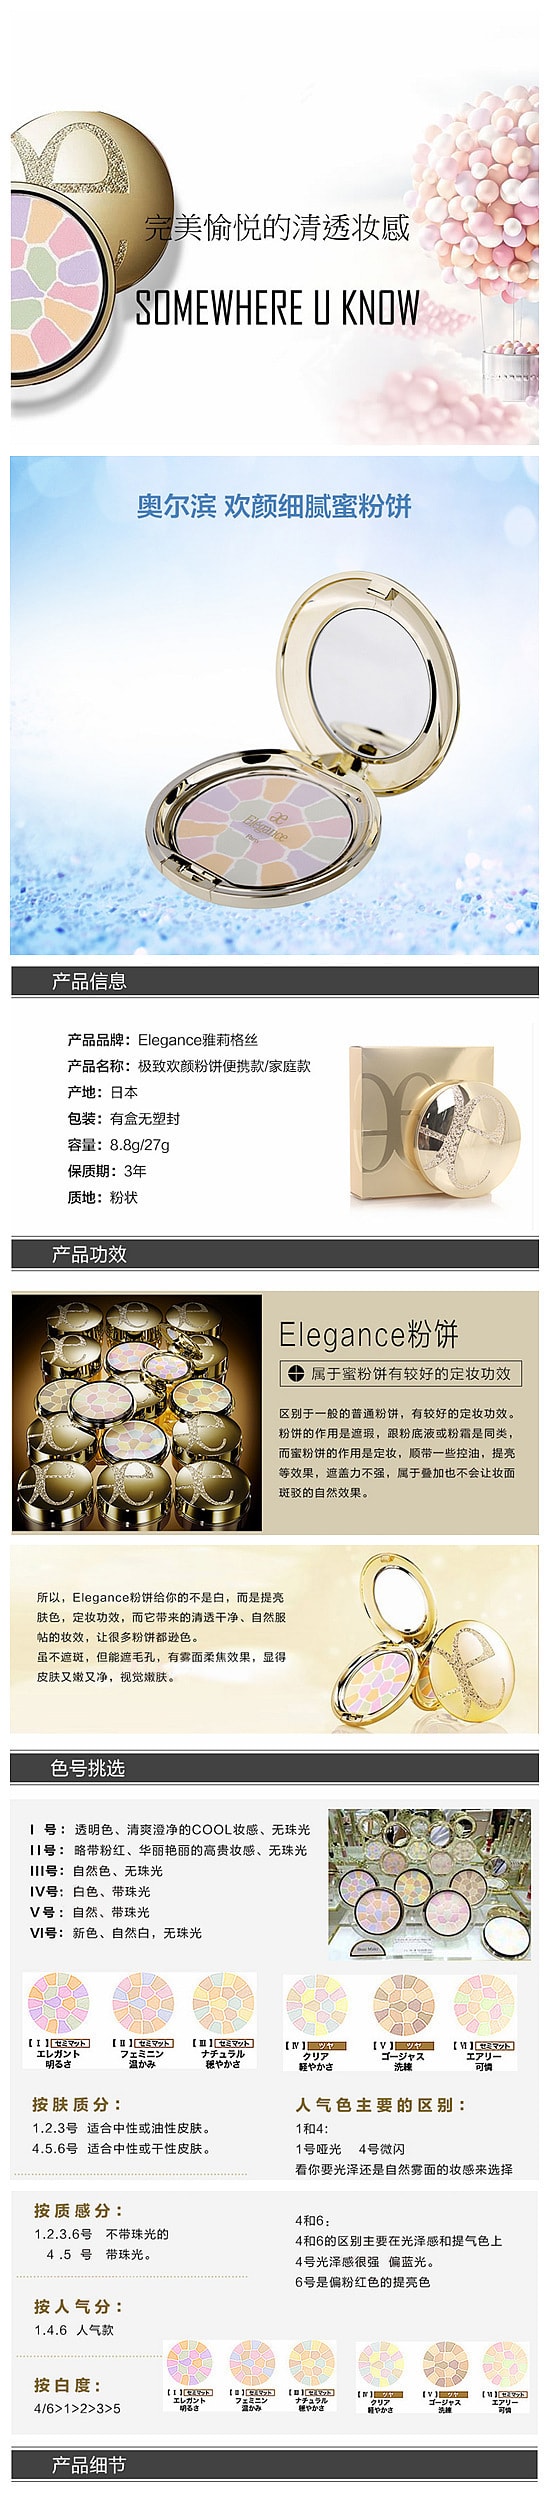 【日本DHL直效郵件】ELEGANCE 極致歡顏蜜粉餅 #6號 E大餅 8.8g COSME大賞受賞